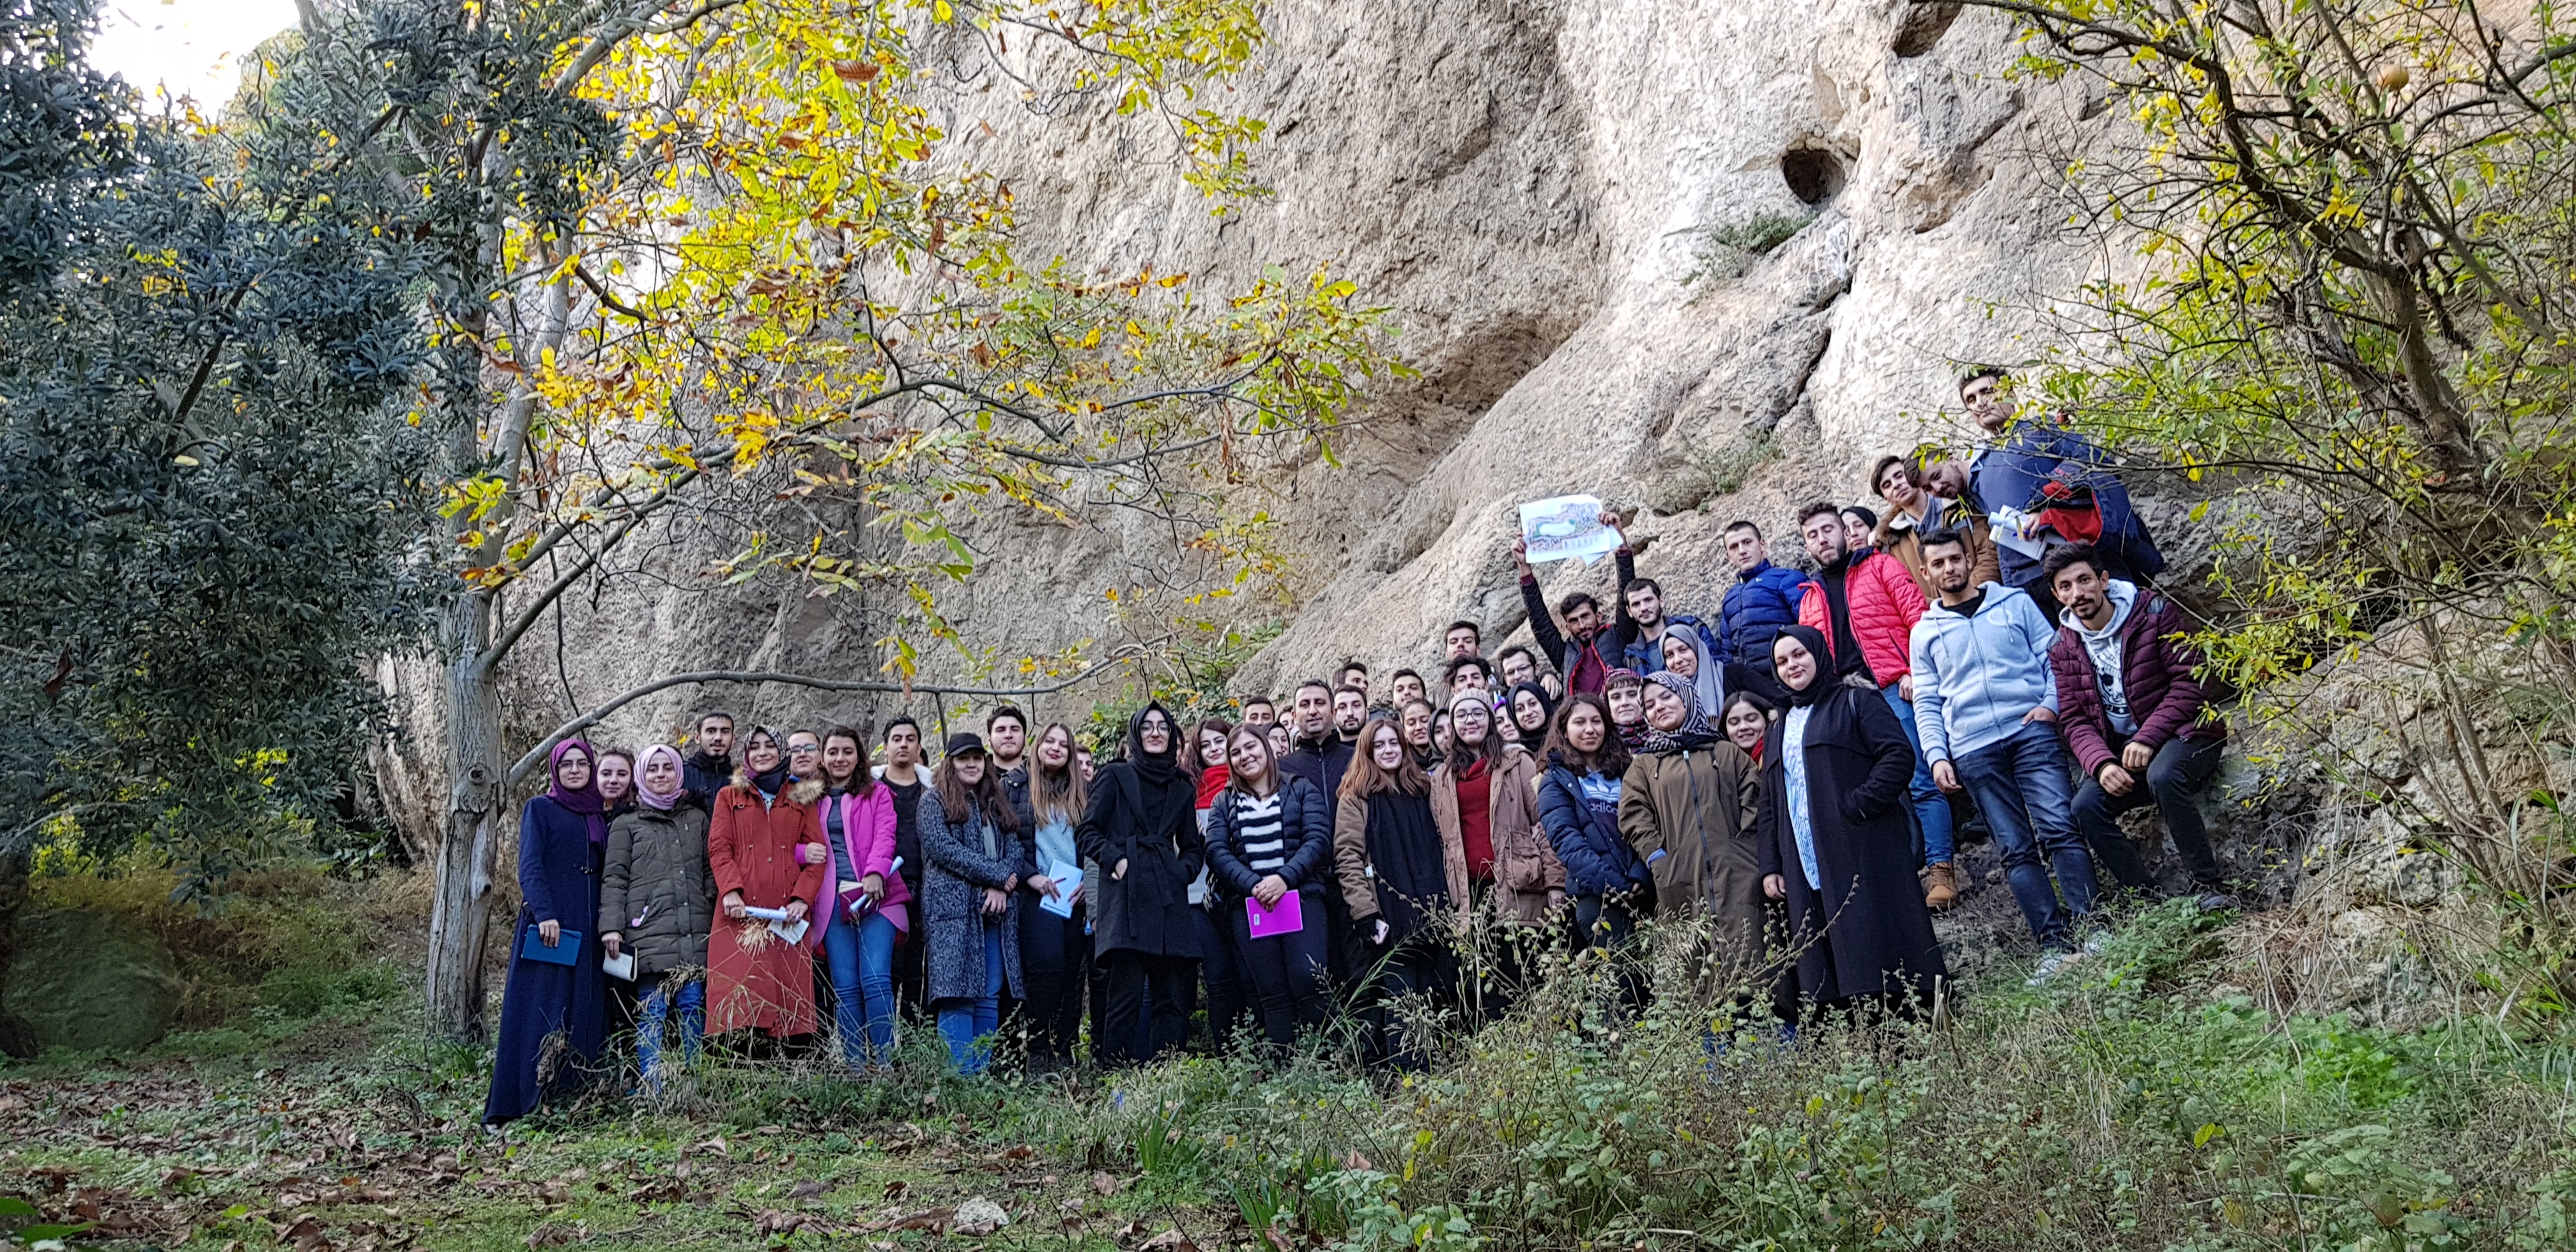  Coğrafya Bölümü 1. Sınıf öğrencilerine Güneydoğu Marmara’da “Genel Jeomorfoloji I” dersi kapsamında teknik gezi düzenlendi. 